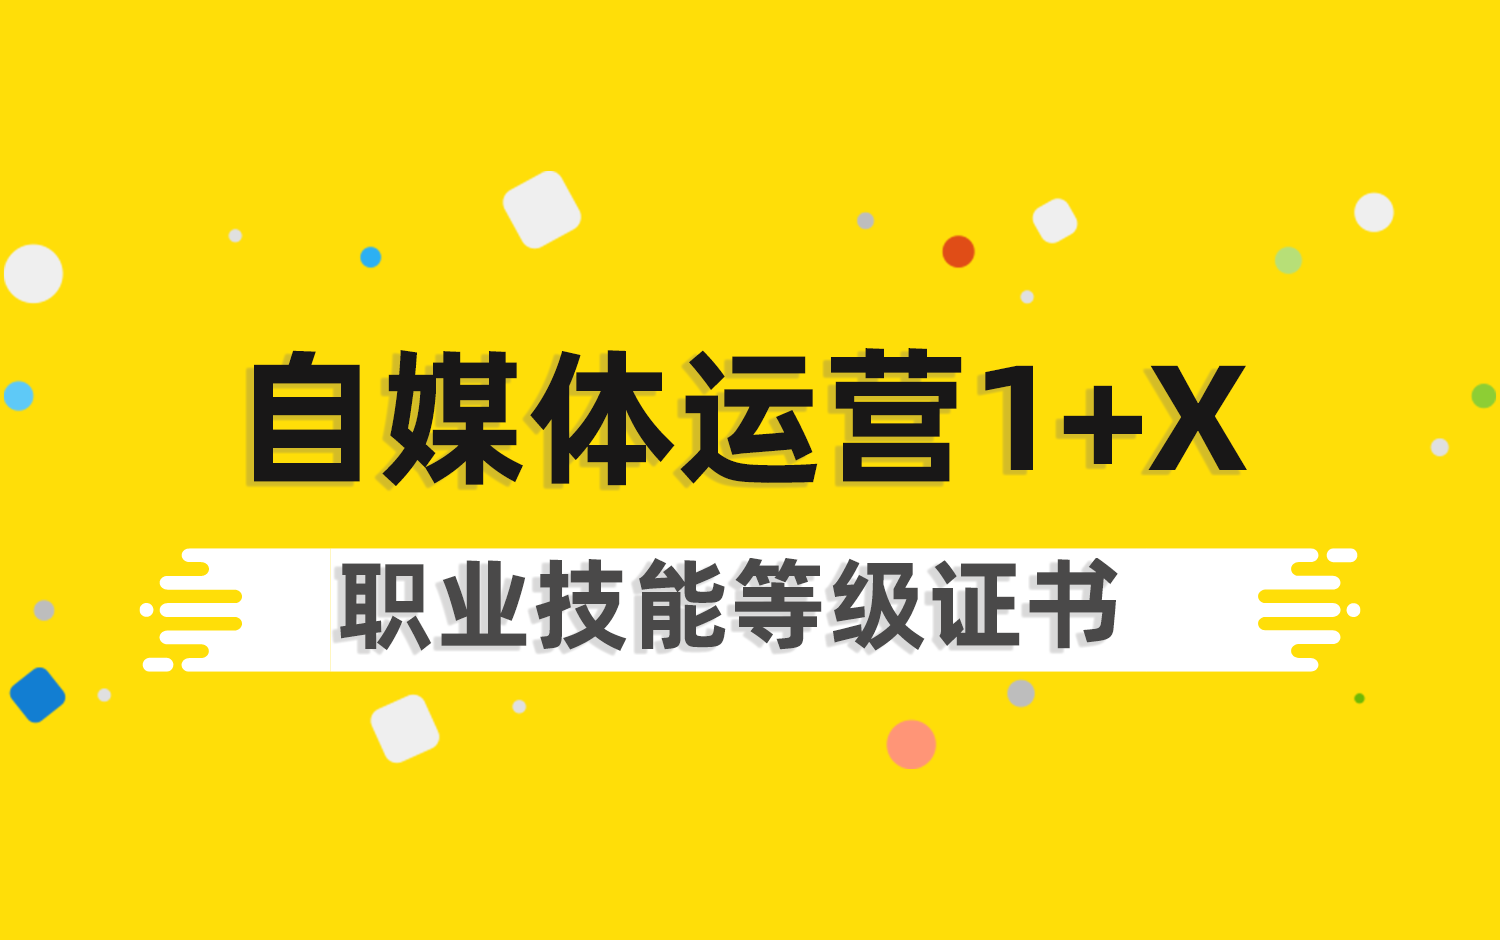 自媒體(tǐ)运营1+X职业技能(néng)等级证书